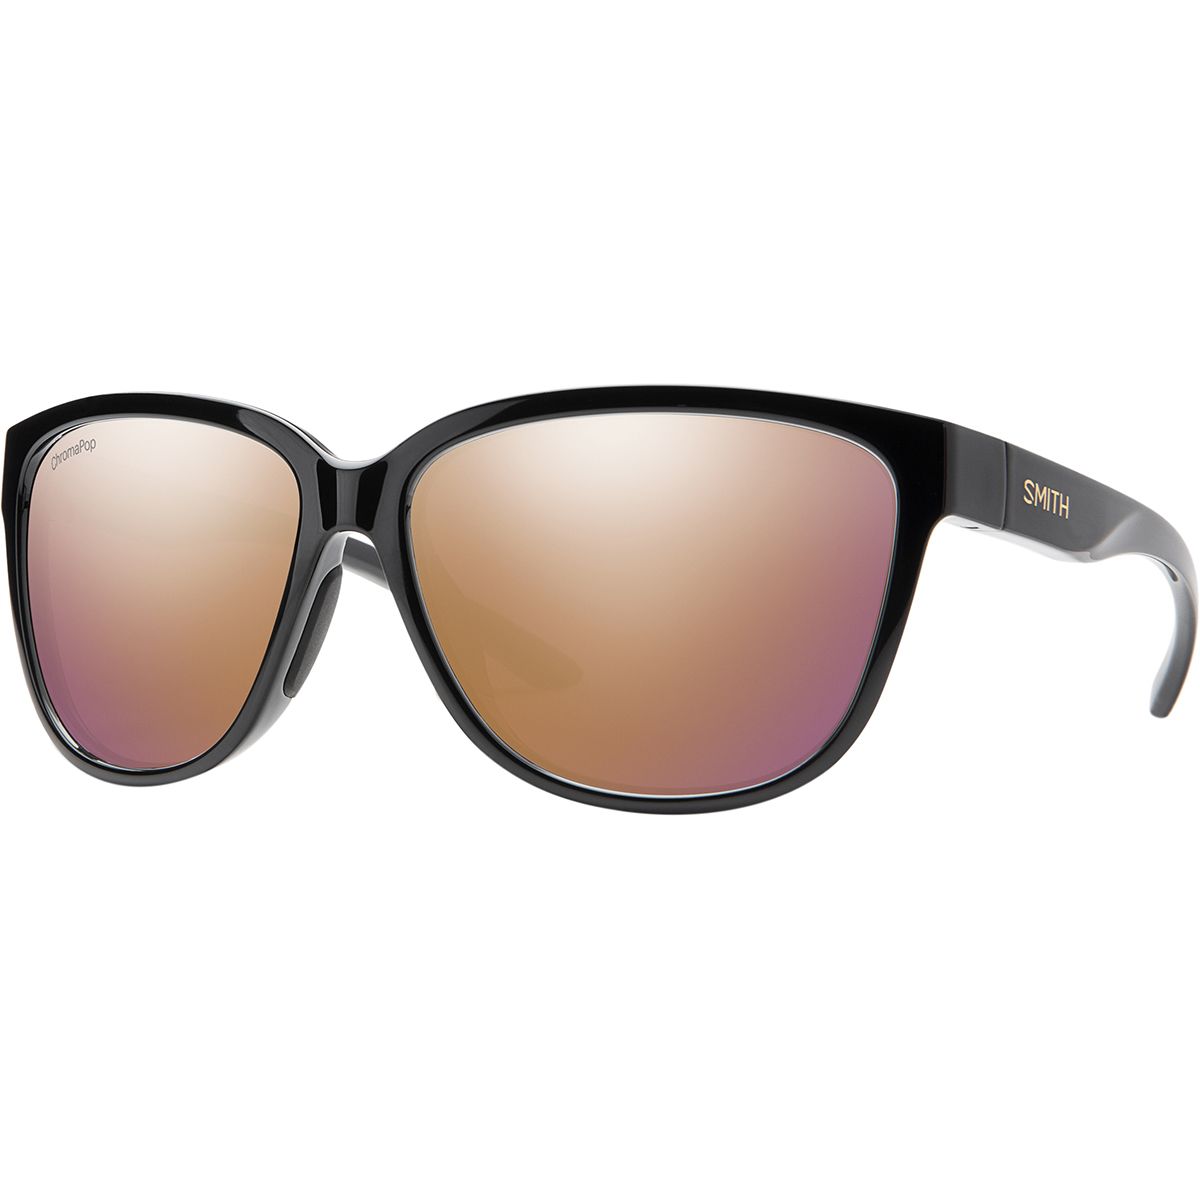 Smith Monterey ChromaPop Sunglasses